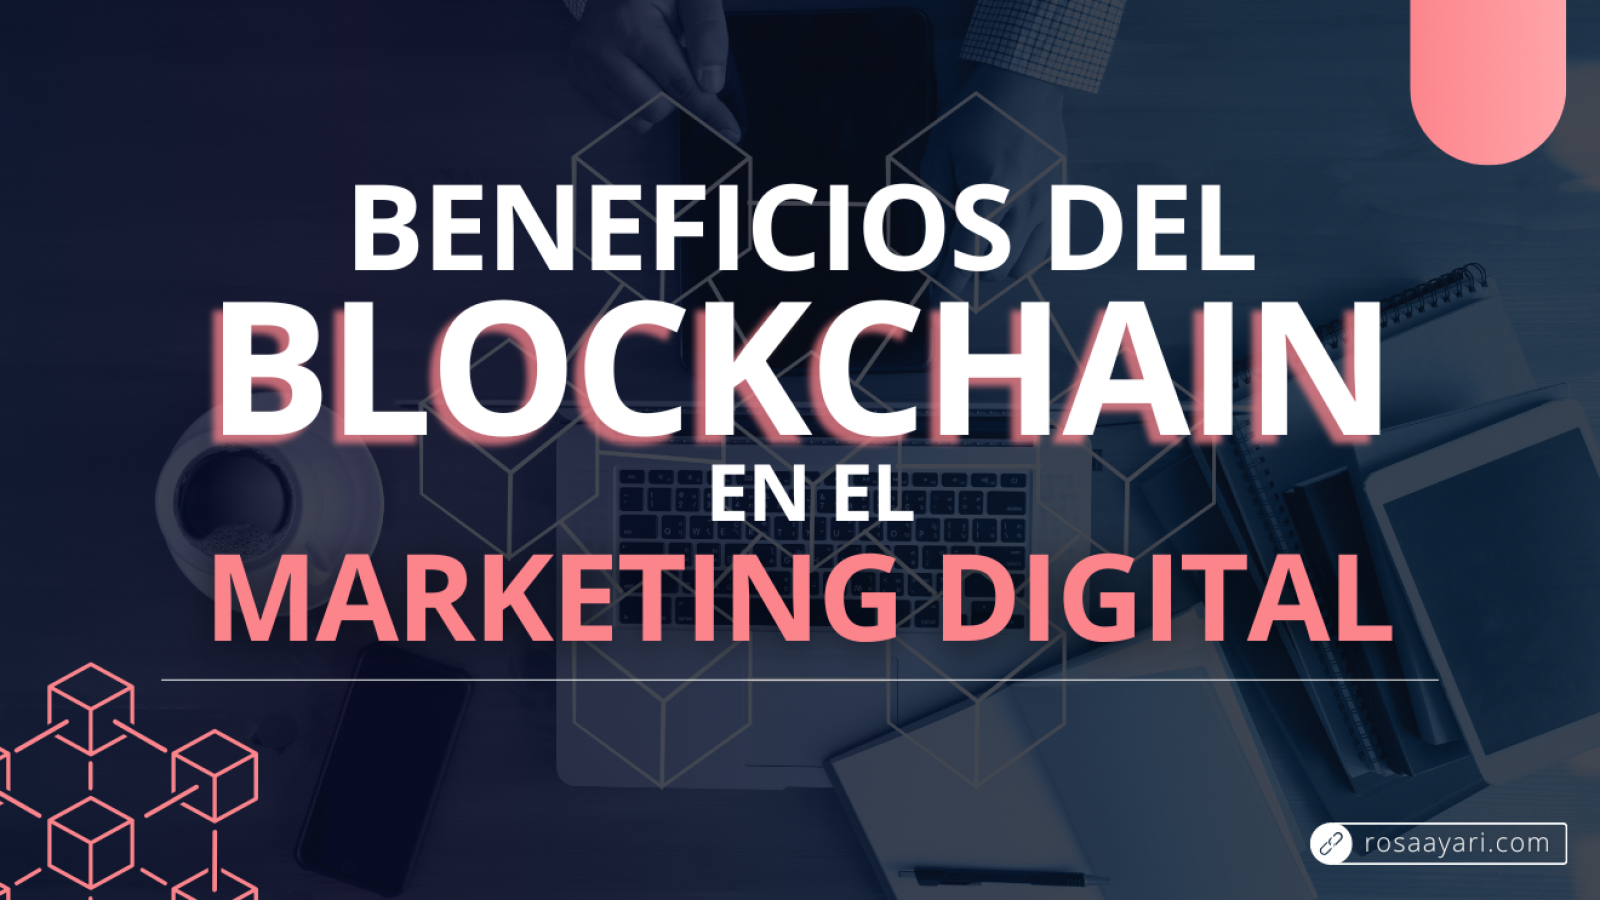 Como beneficia la tecnologia blockchain al marketing digital